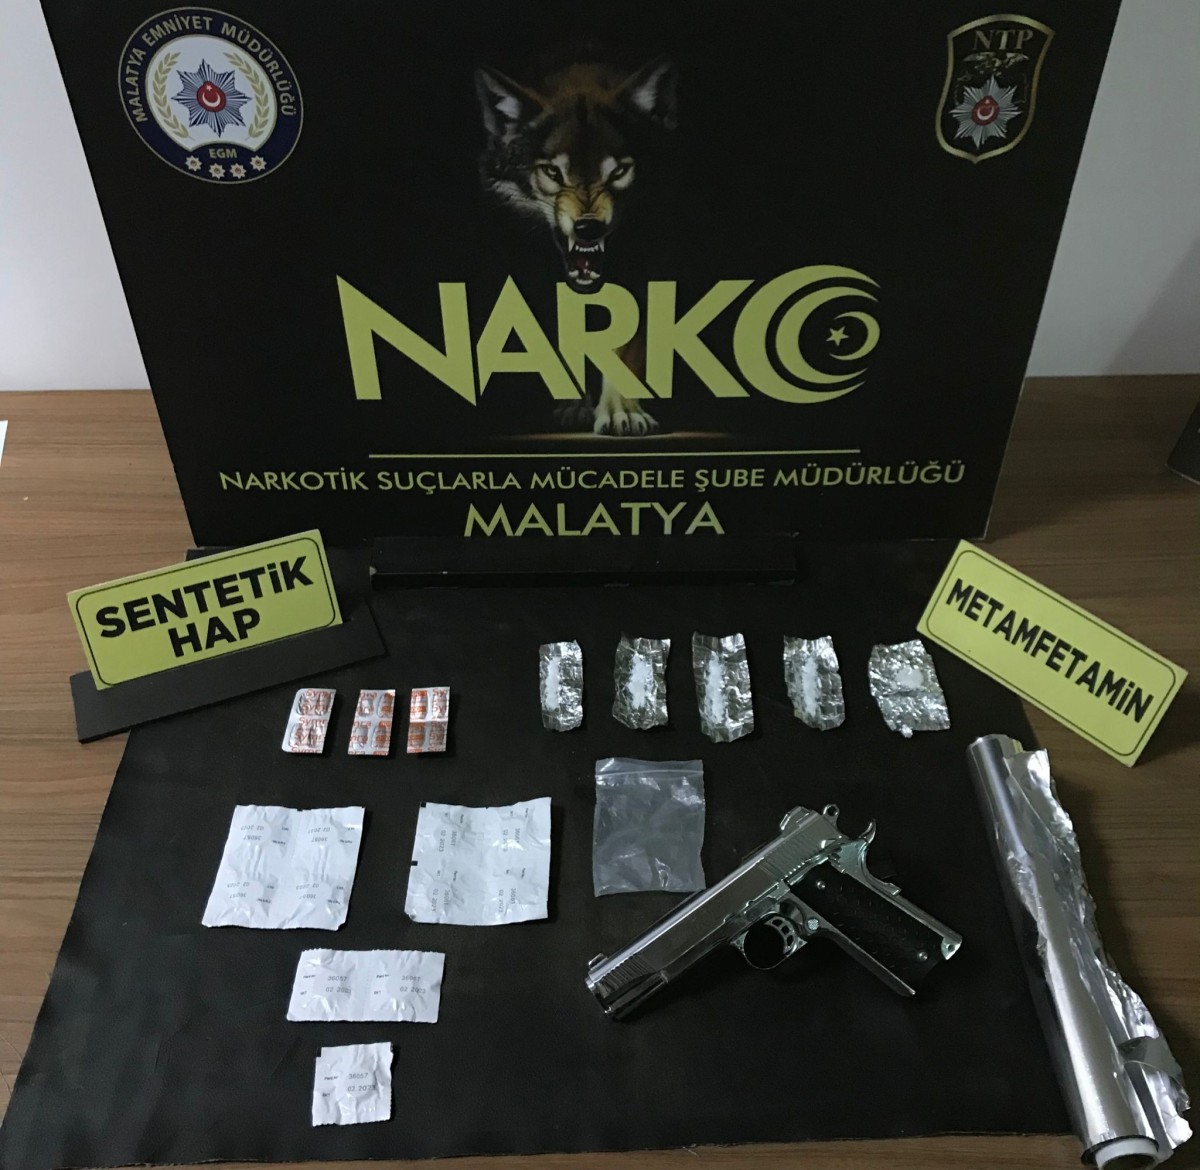  Polis uyuşturucu satıcılarına 4 ayrı operasyon düzenledi: 10 kişi gözaltında